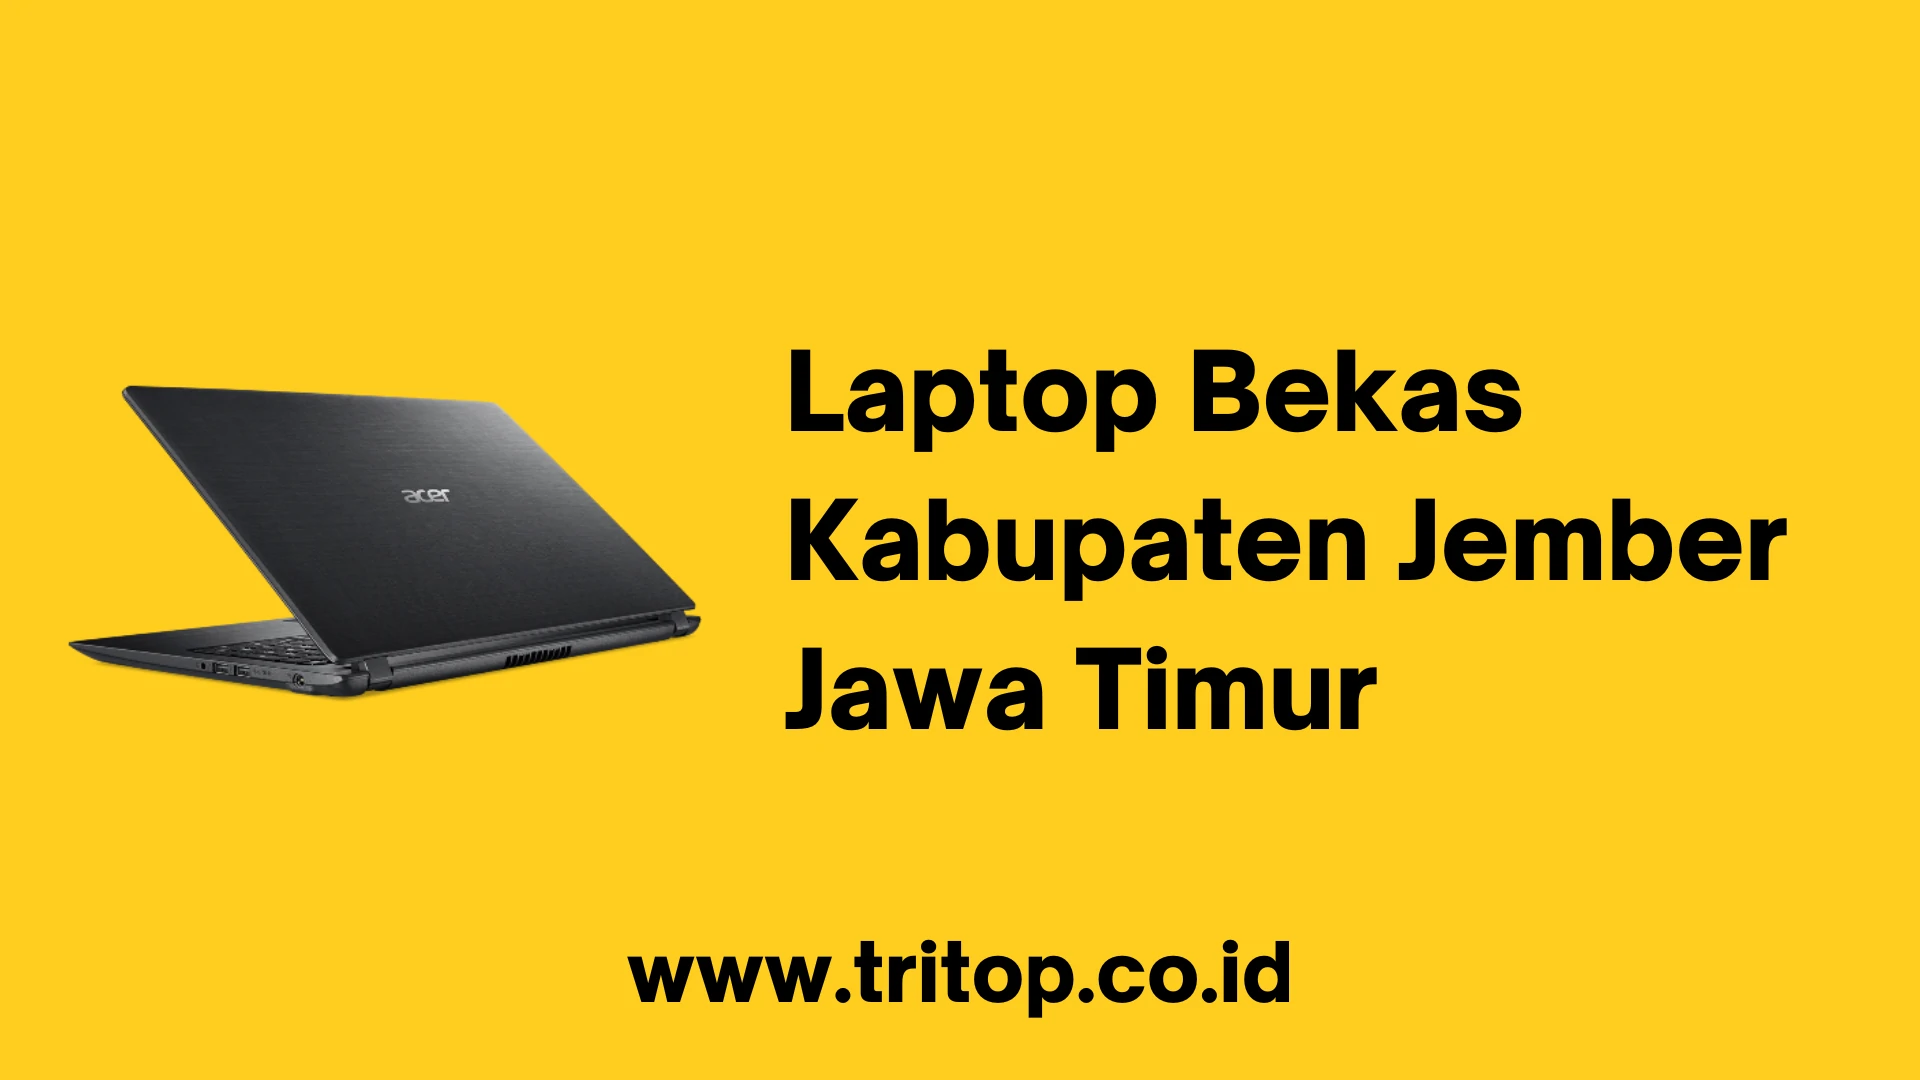 Laptop Jember Laptop Bekas Kabupaten Jember Jawa Timur